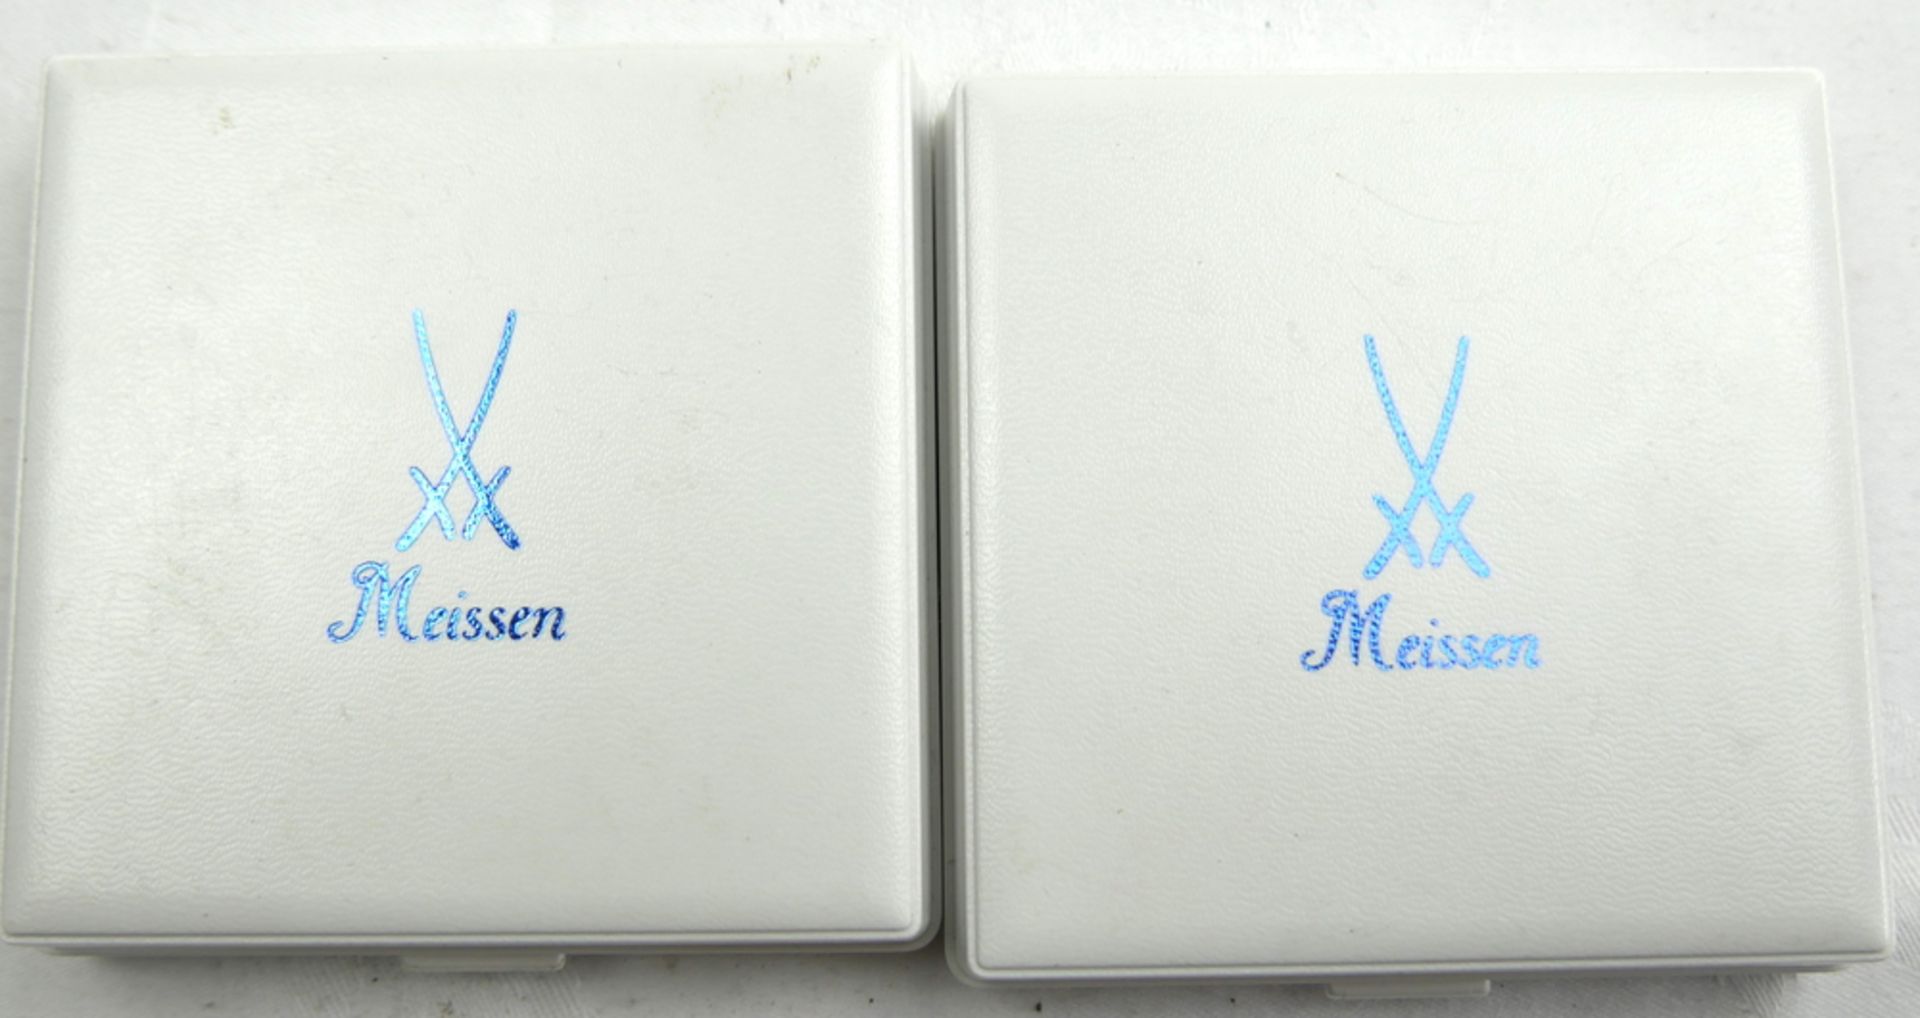 Meissen, 2 Porzellan Medaillen, Arrneimittelwerk Dresden - Burgen und Schlösser aus Sachsen. Im - Image 4 of 4